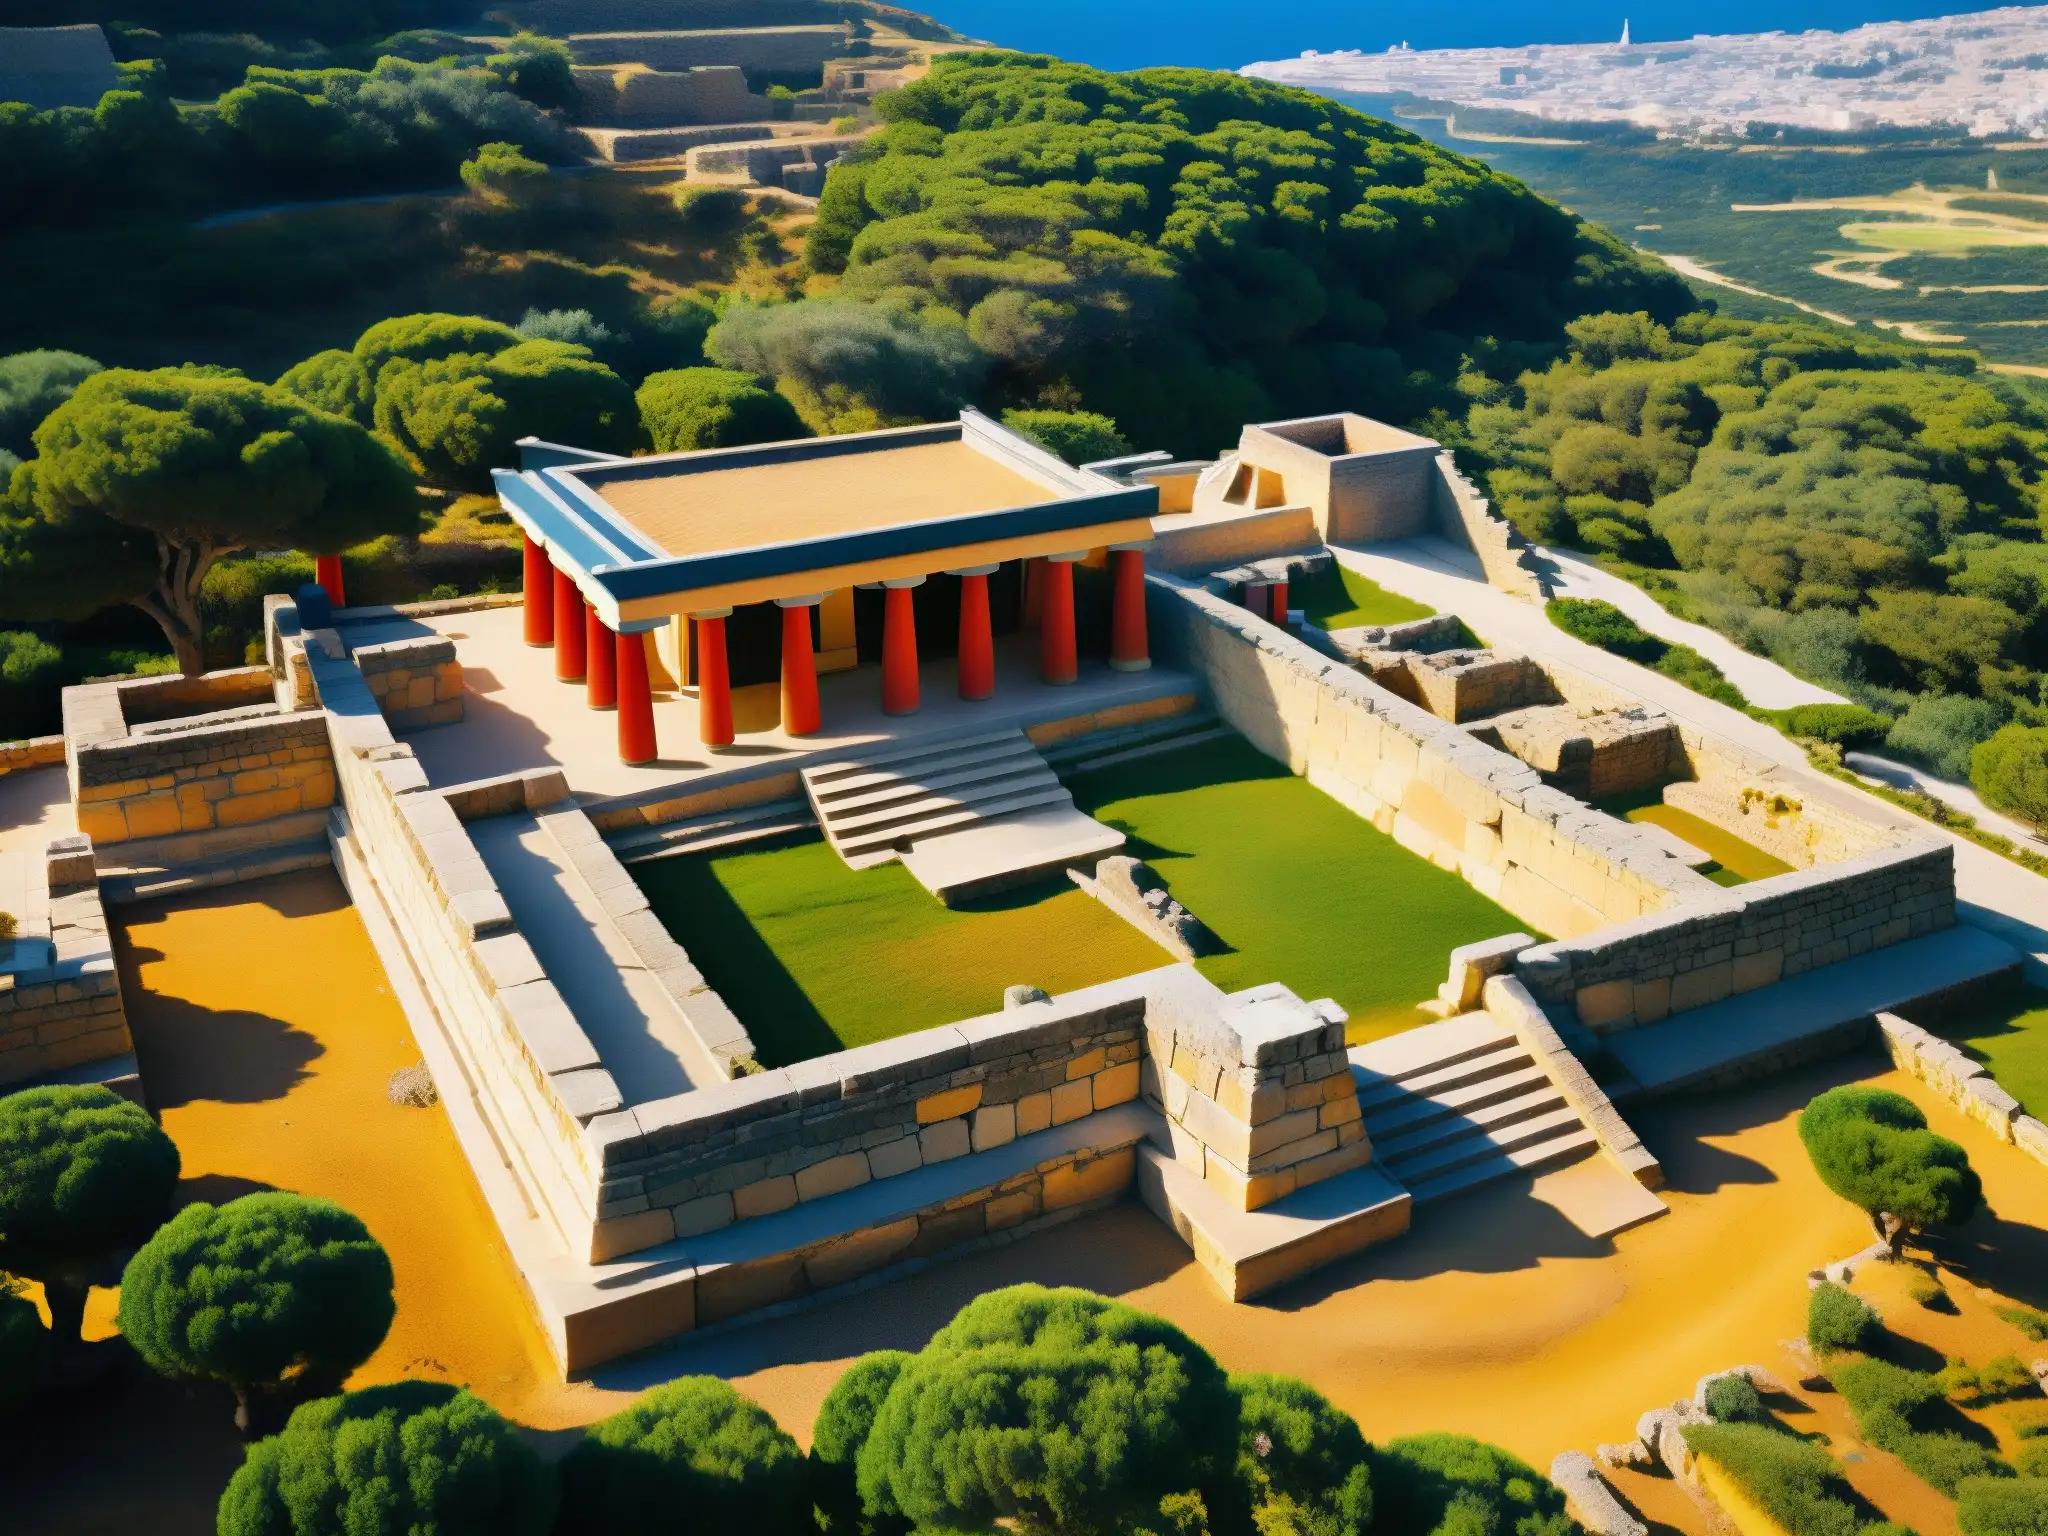 Explora los secretos del Minotauro en Creta con esta imagen de los intrincados laberintos y ruinas del Palacio de Knossos, bañados por la luz del sol